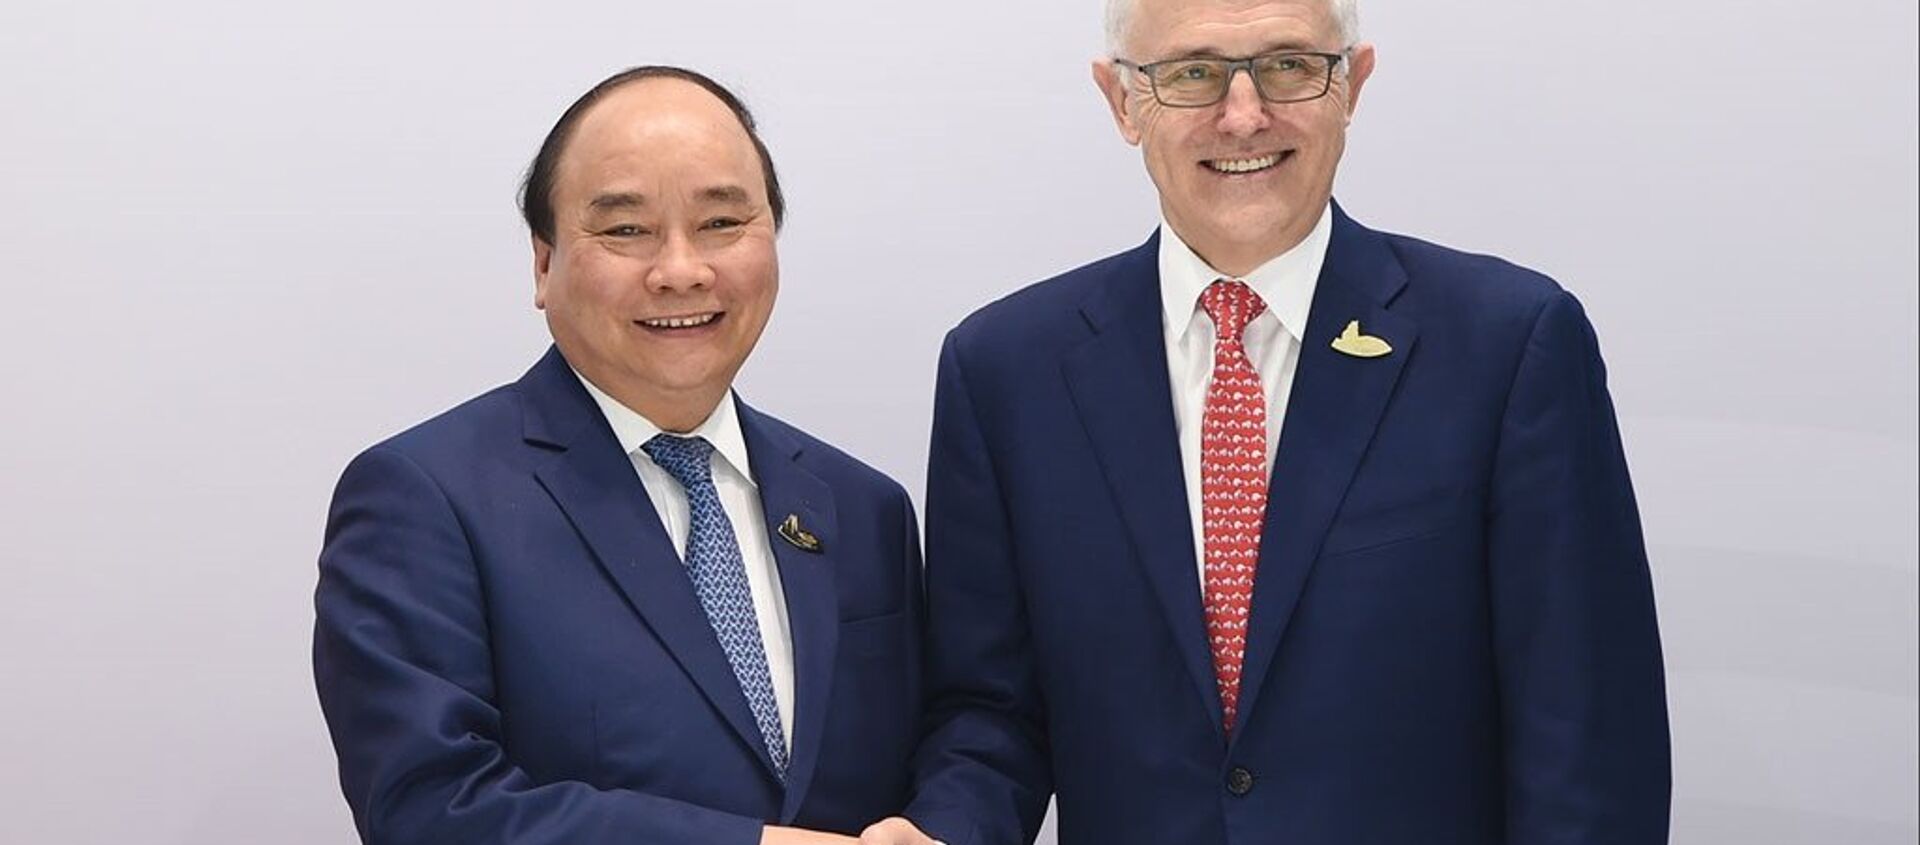 Thủ tướng Nguyễn Xuân Phúc bắt tay với Thủ tướng Úc Malcolm Turnbull - Sputnik Việt Nam, 1920, 14.03.2018